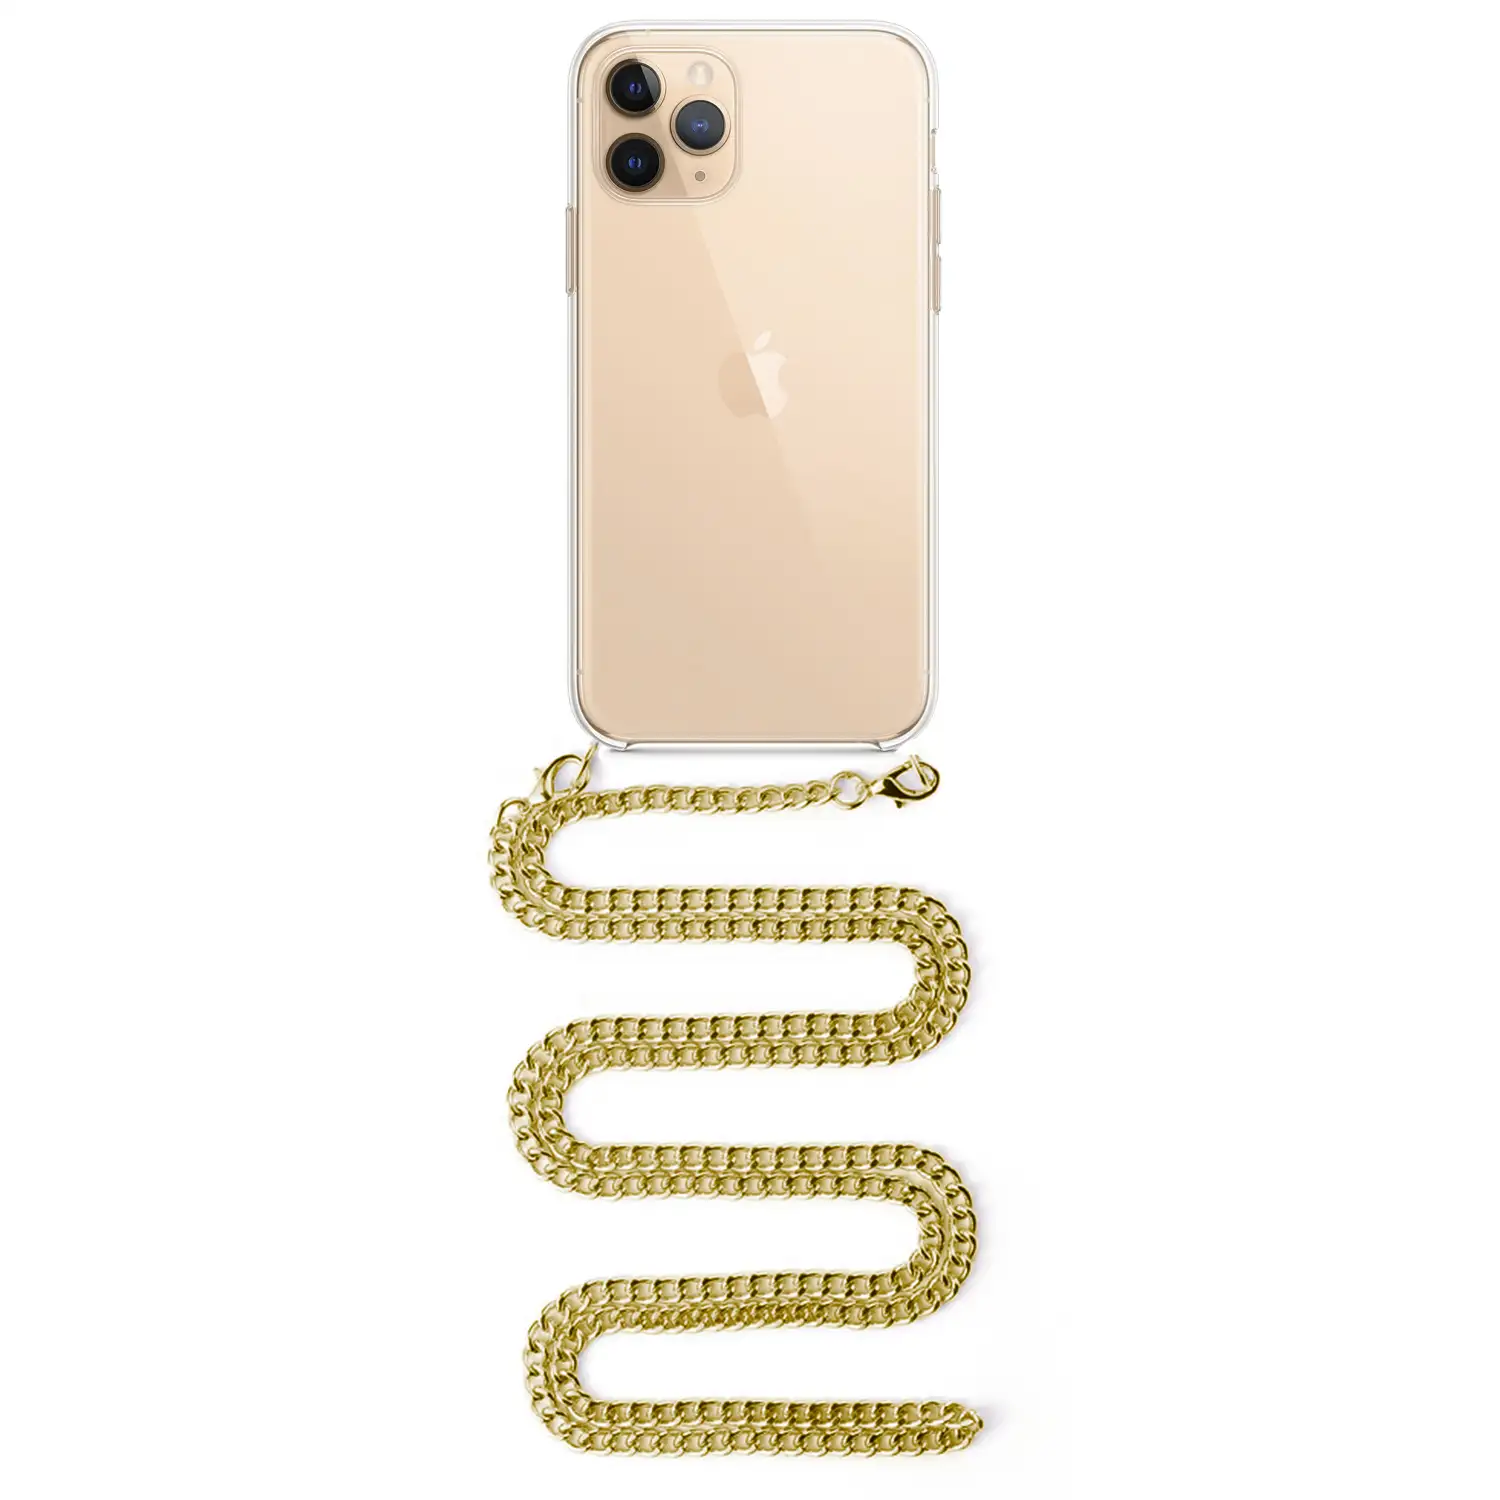 Carcasa transparente iPhone 11 Pro Max con colgante cadena metálica. Accesorio de moda, ajuste perfecto y máxima protección